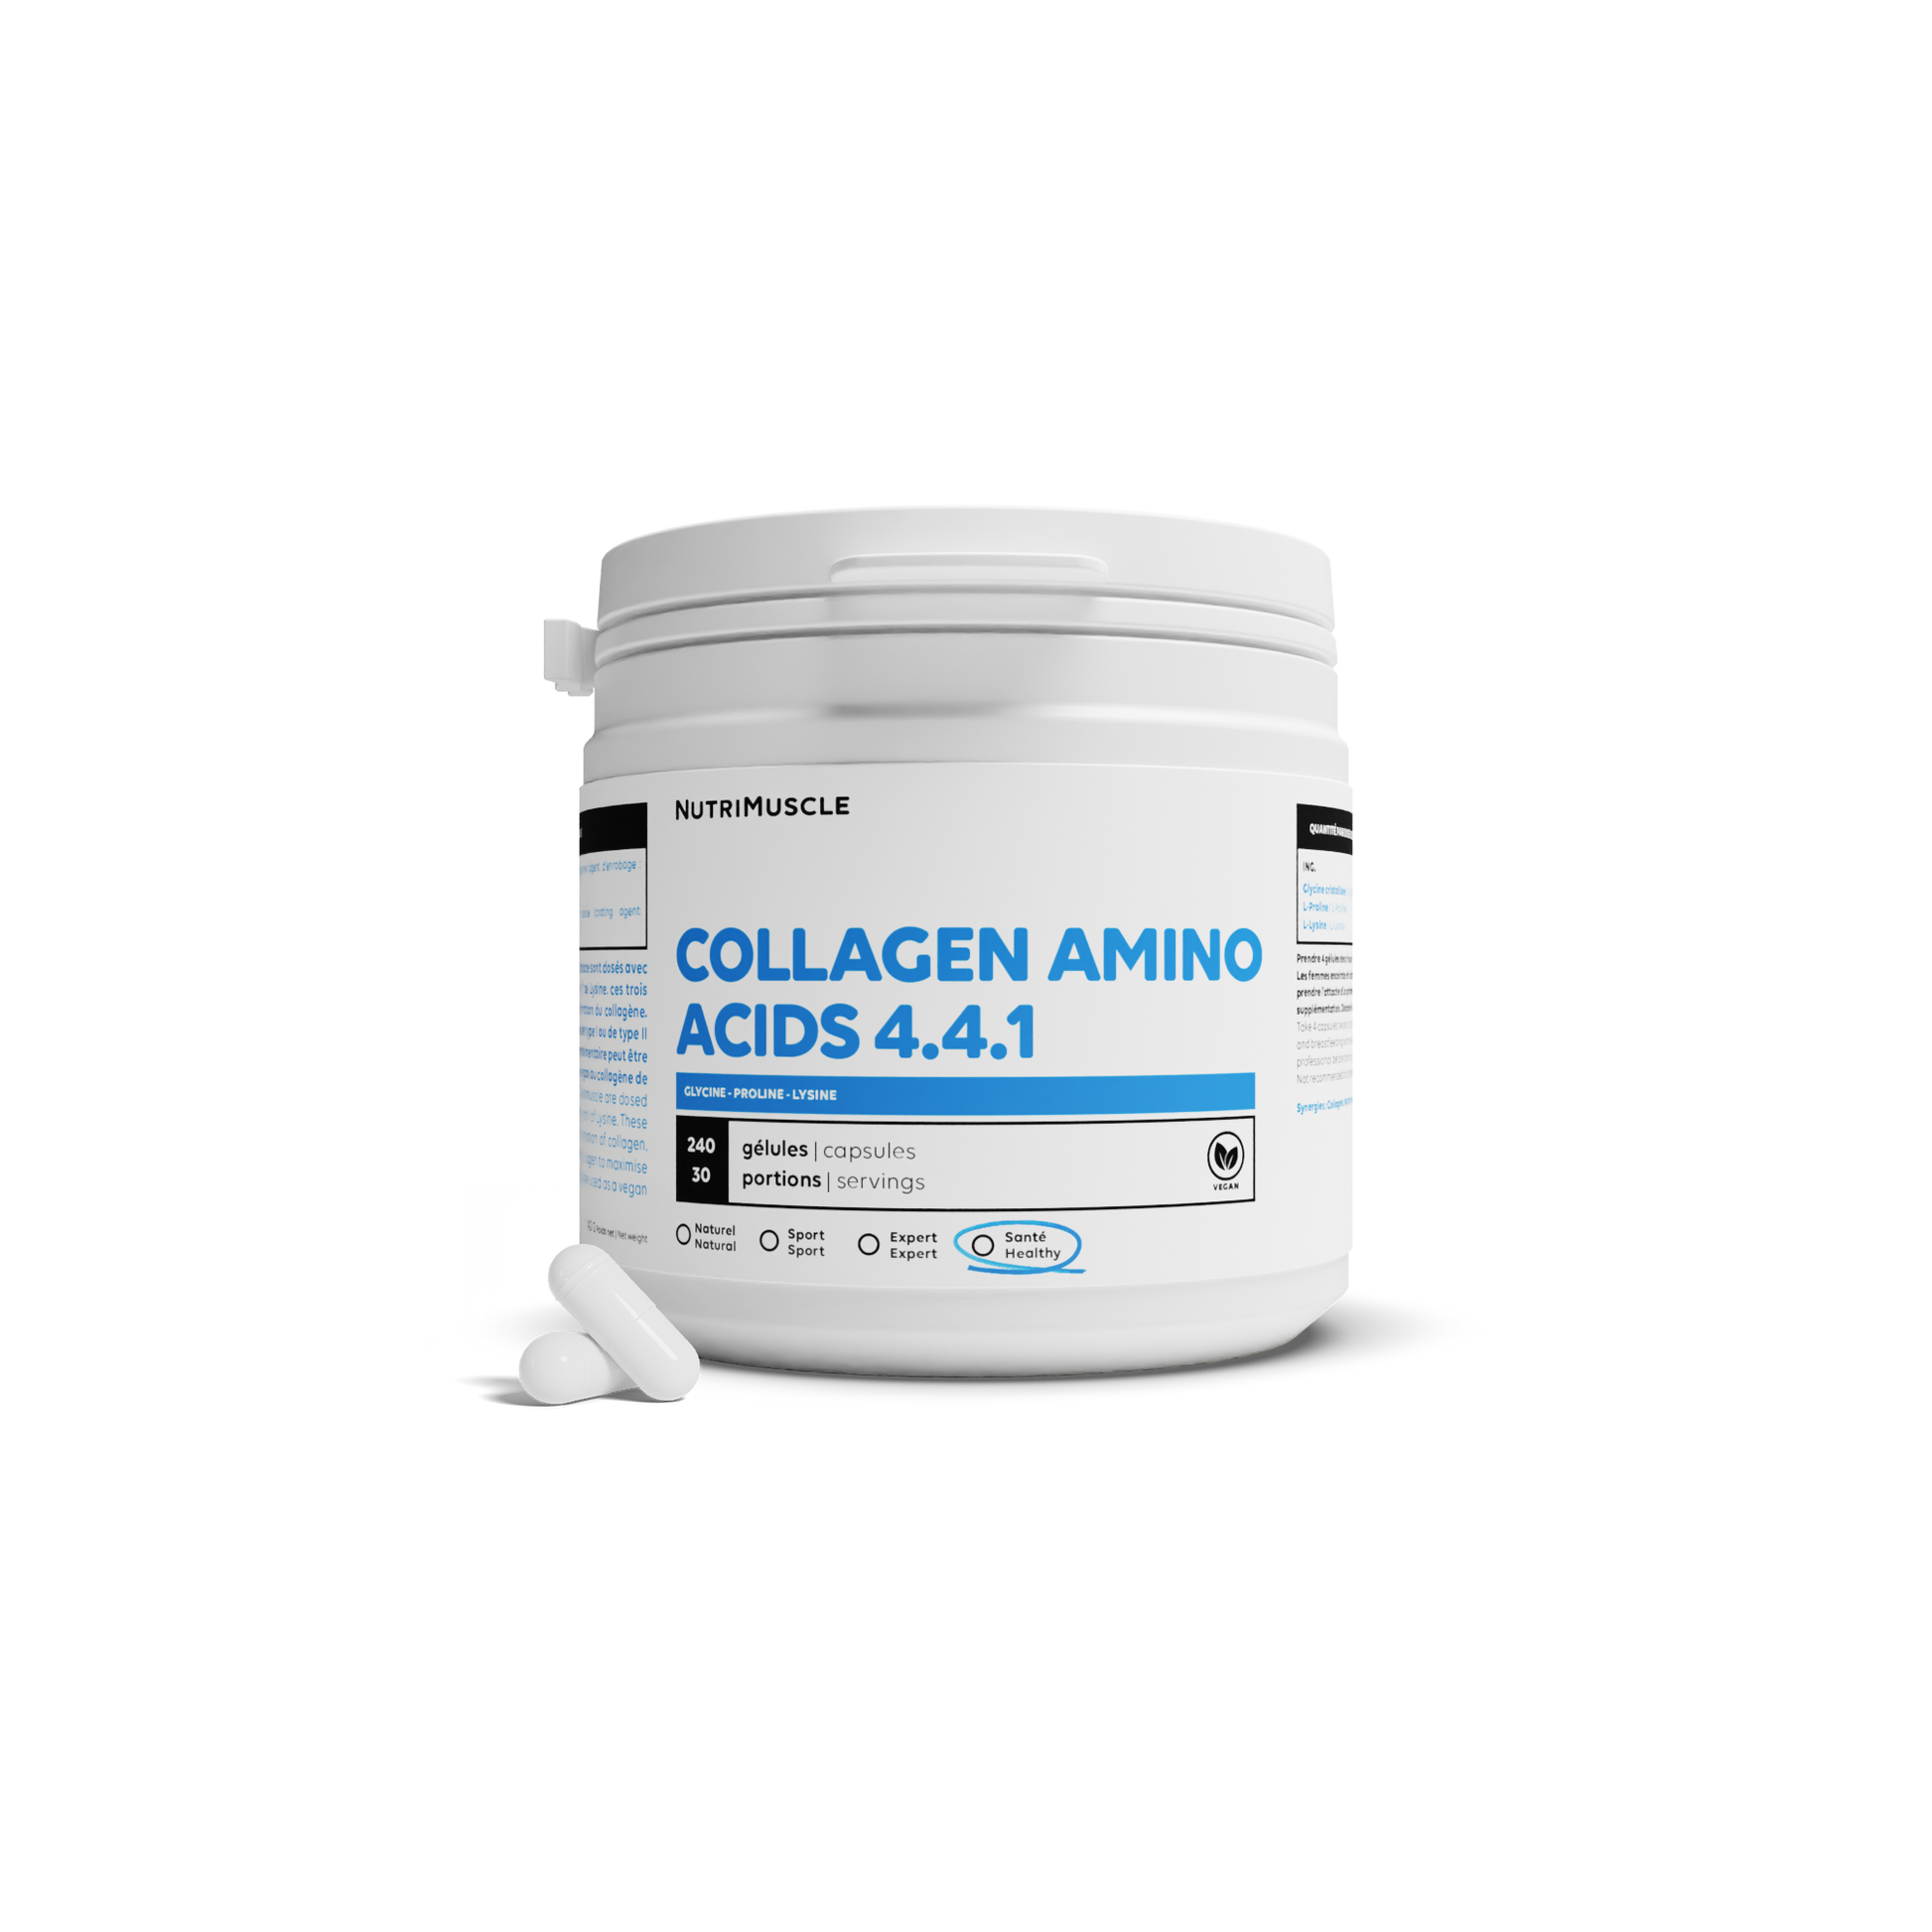 A amino acids of collagen 4.4.1 in capsules